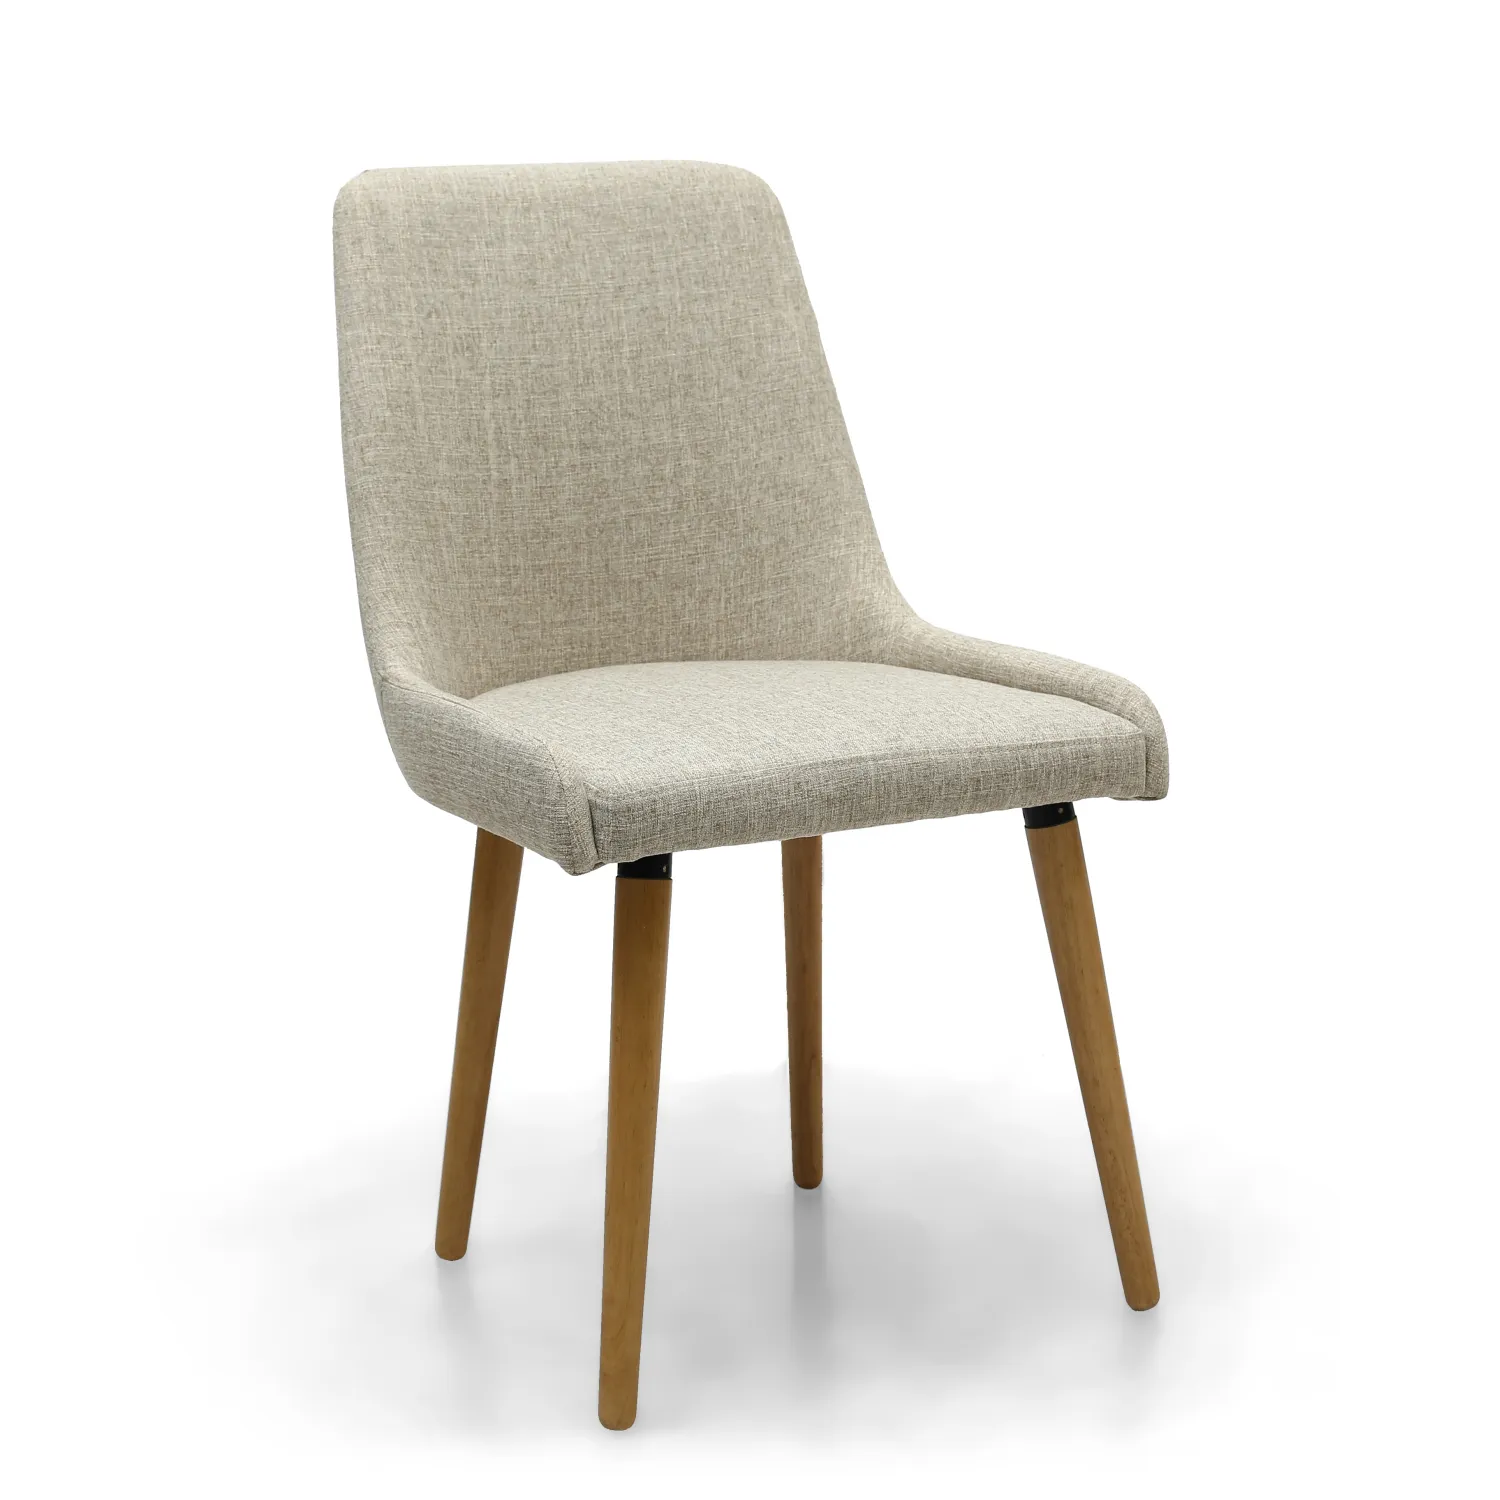 Natural Beige Linen Fabric Dining Chair Light Wood Legs